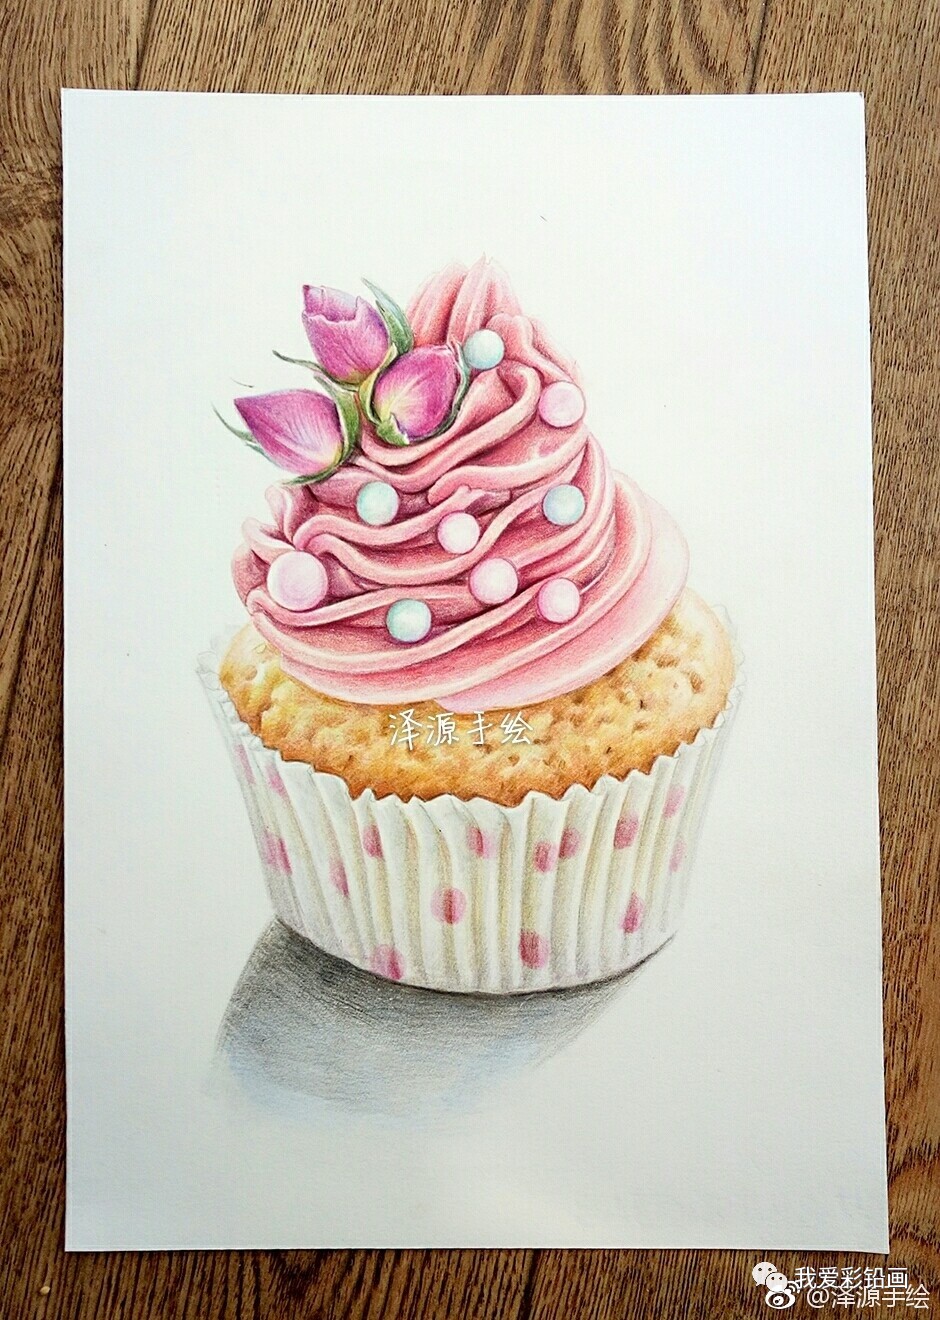 教程| 粉红色冰激凌蛋糕的绘画步骤